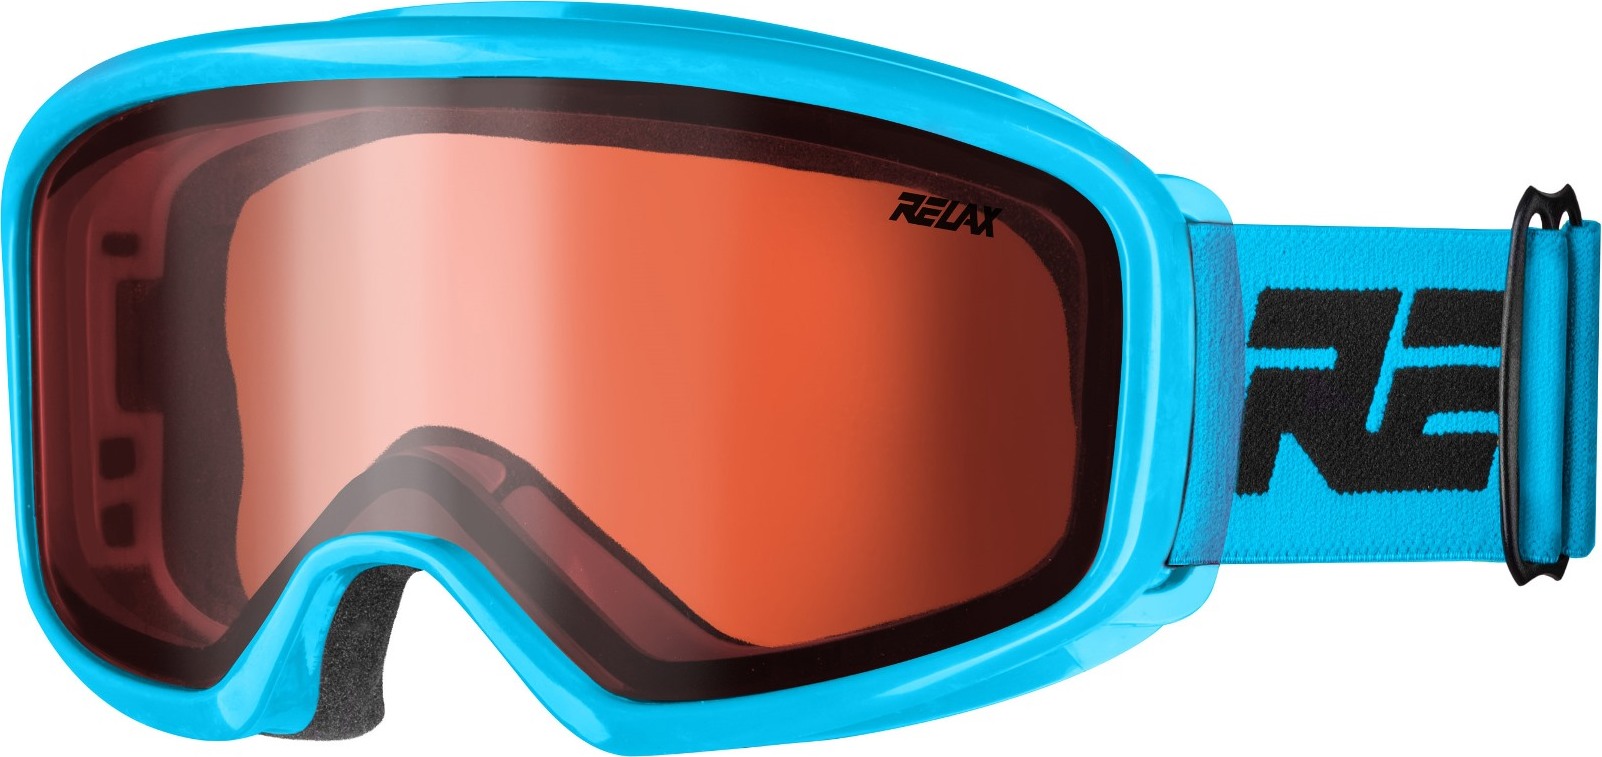 Dětské lyžařské brýle RELAX Arch modré